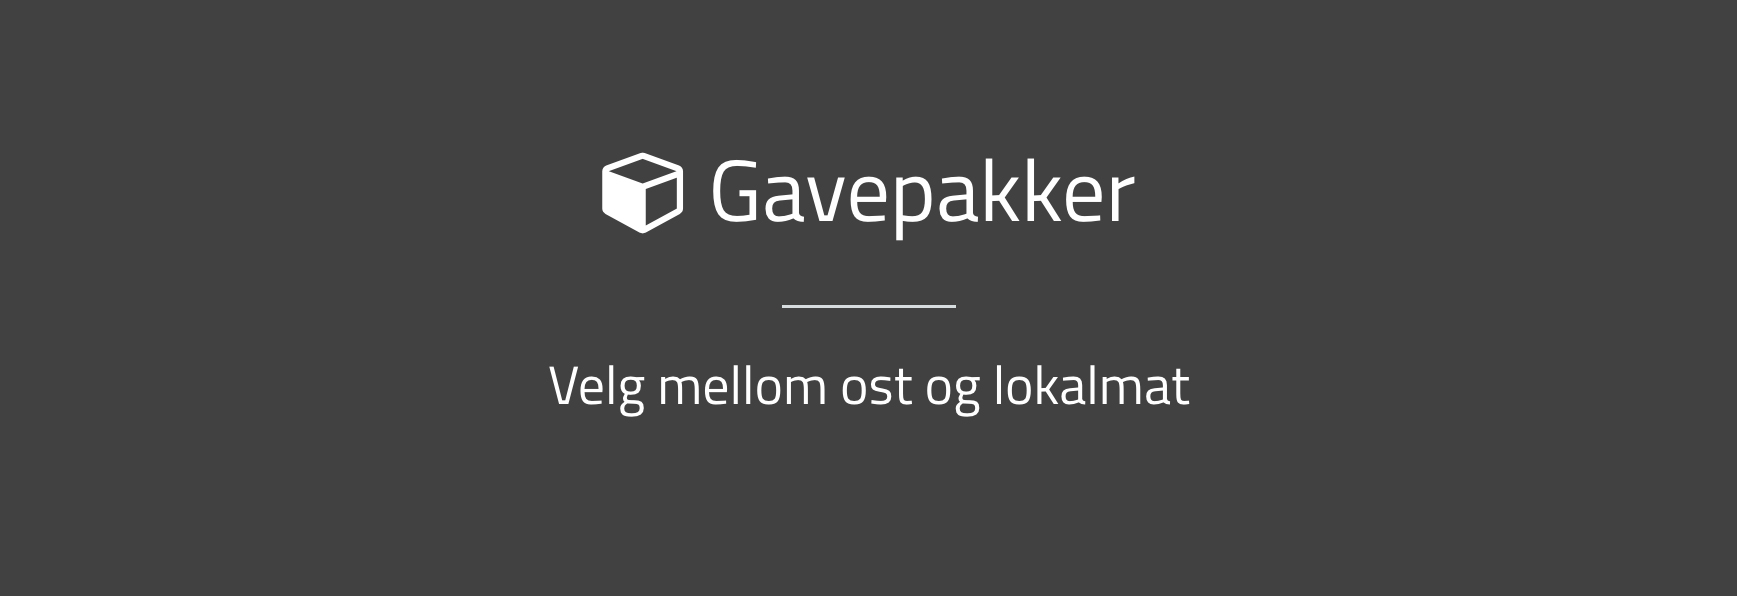 Gavepakker